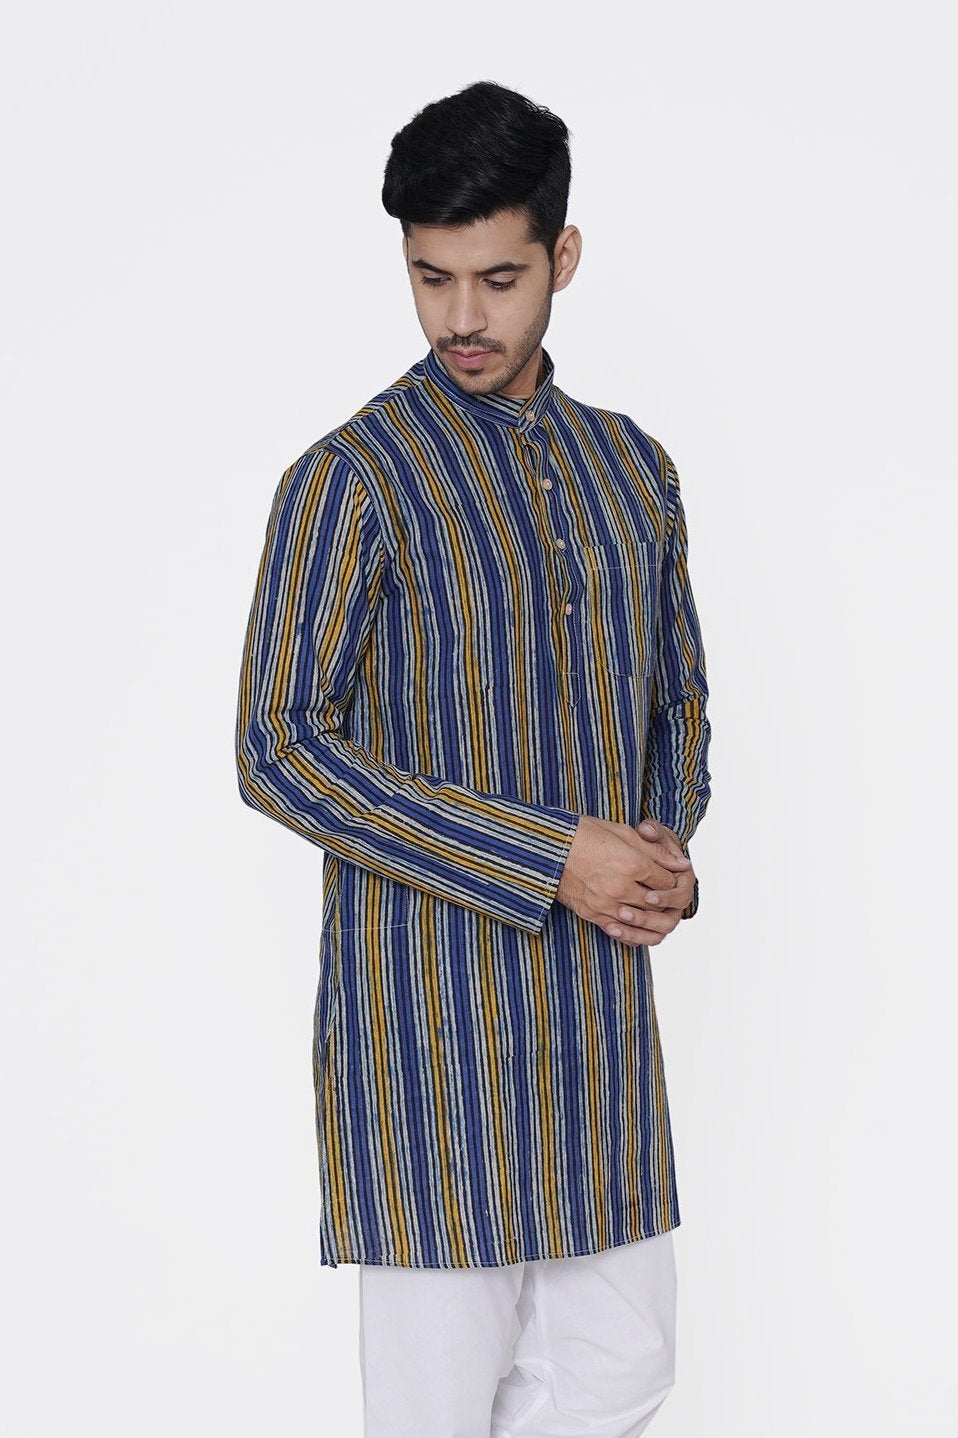 Jaipur 100% Cotton Multicolor Long Kurta Pajama